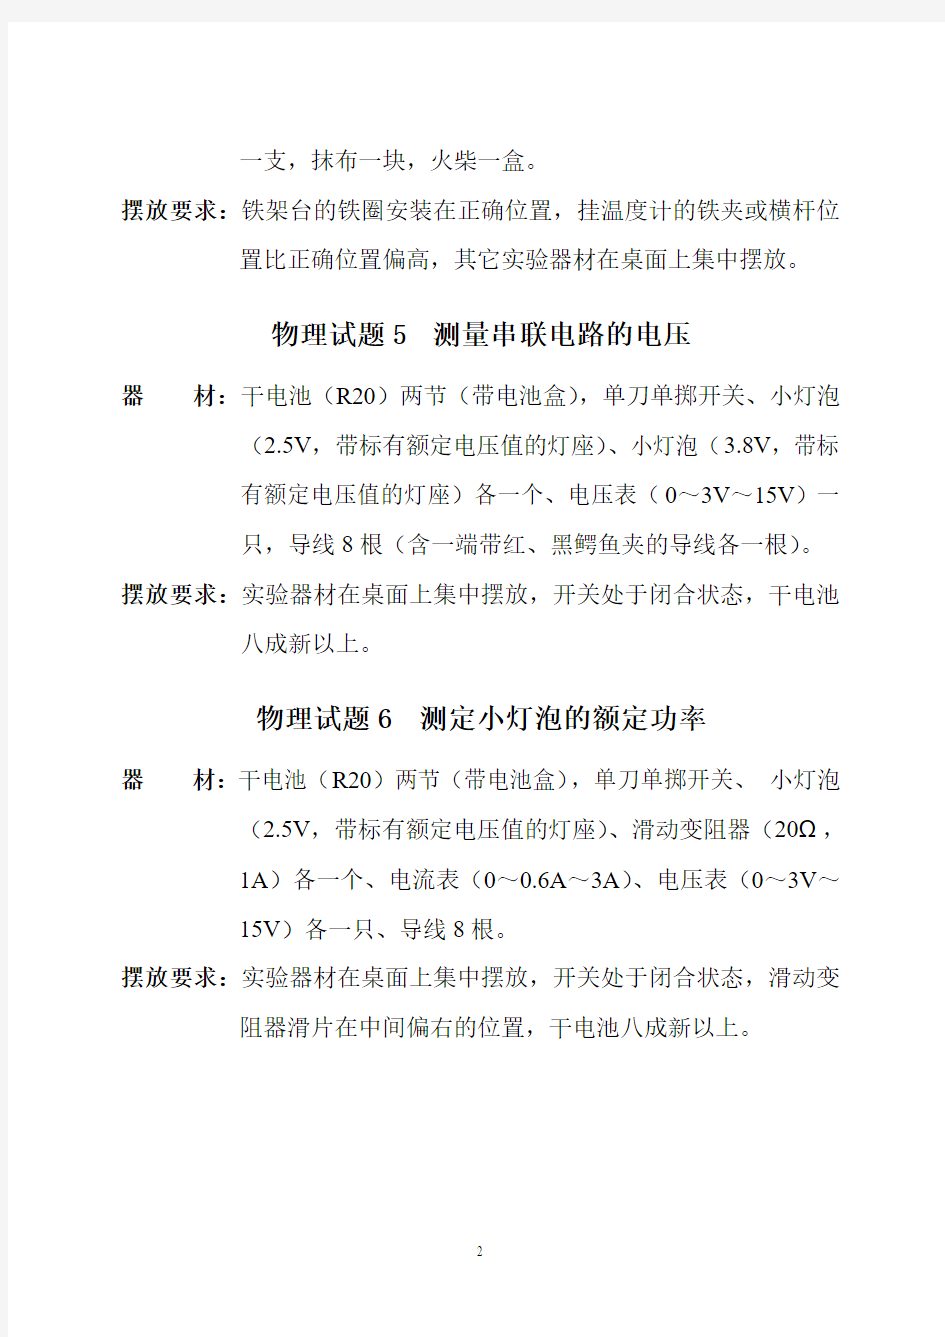 2011年济南市物理学科实验能力考查器材清单及要求(定稿)